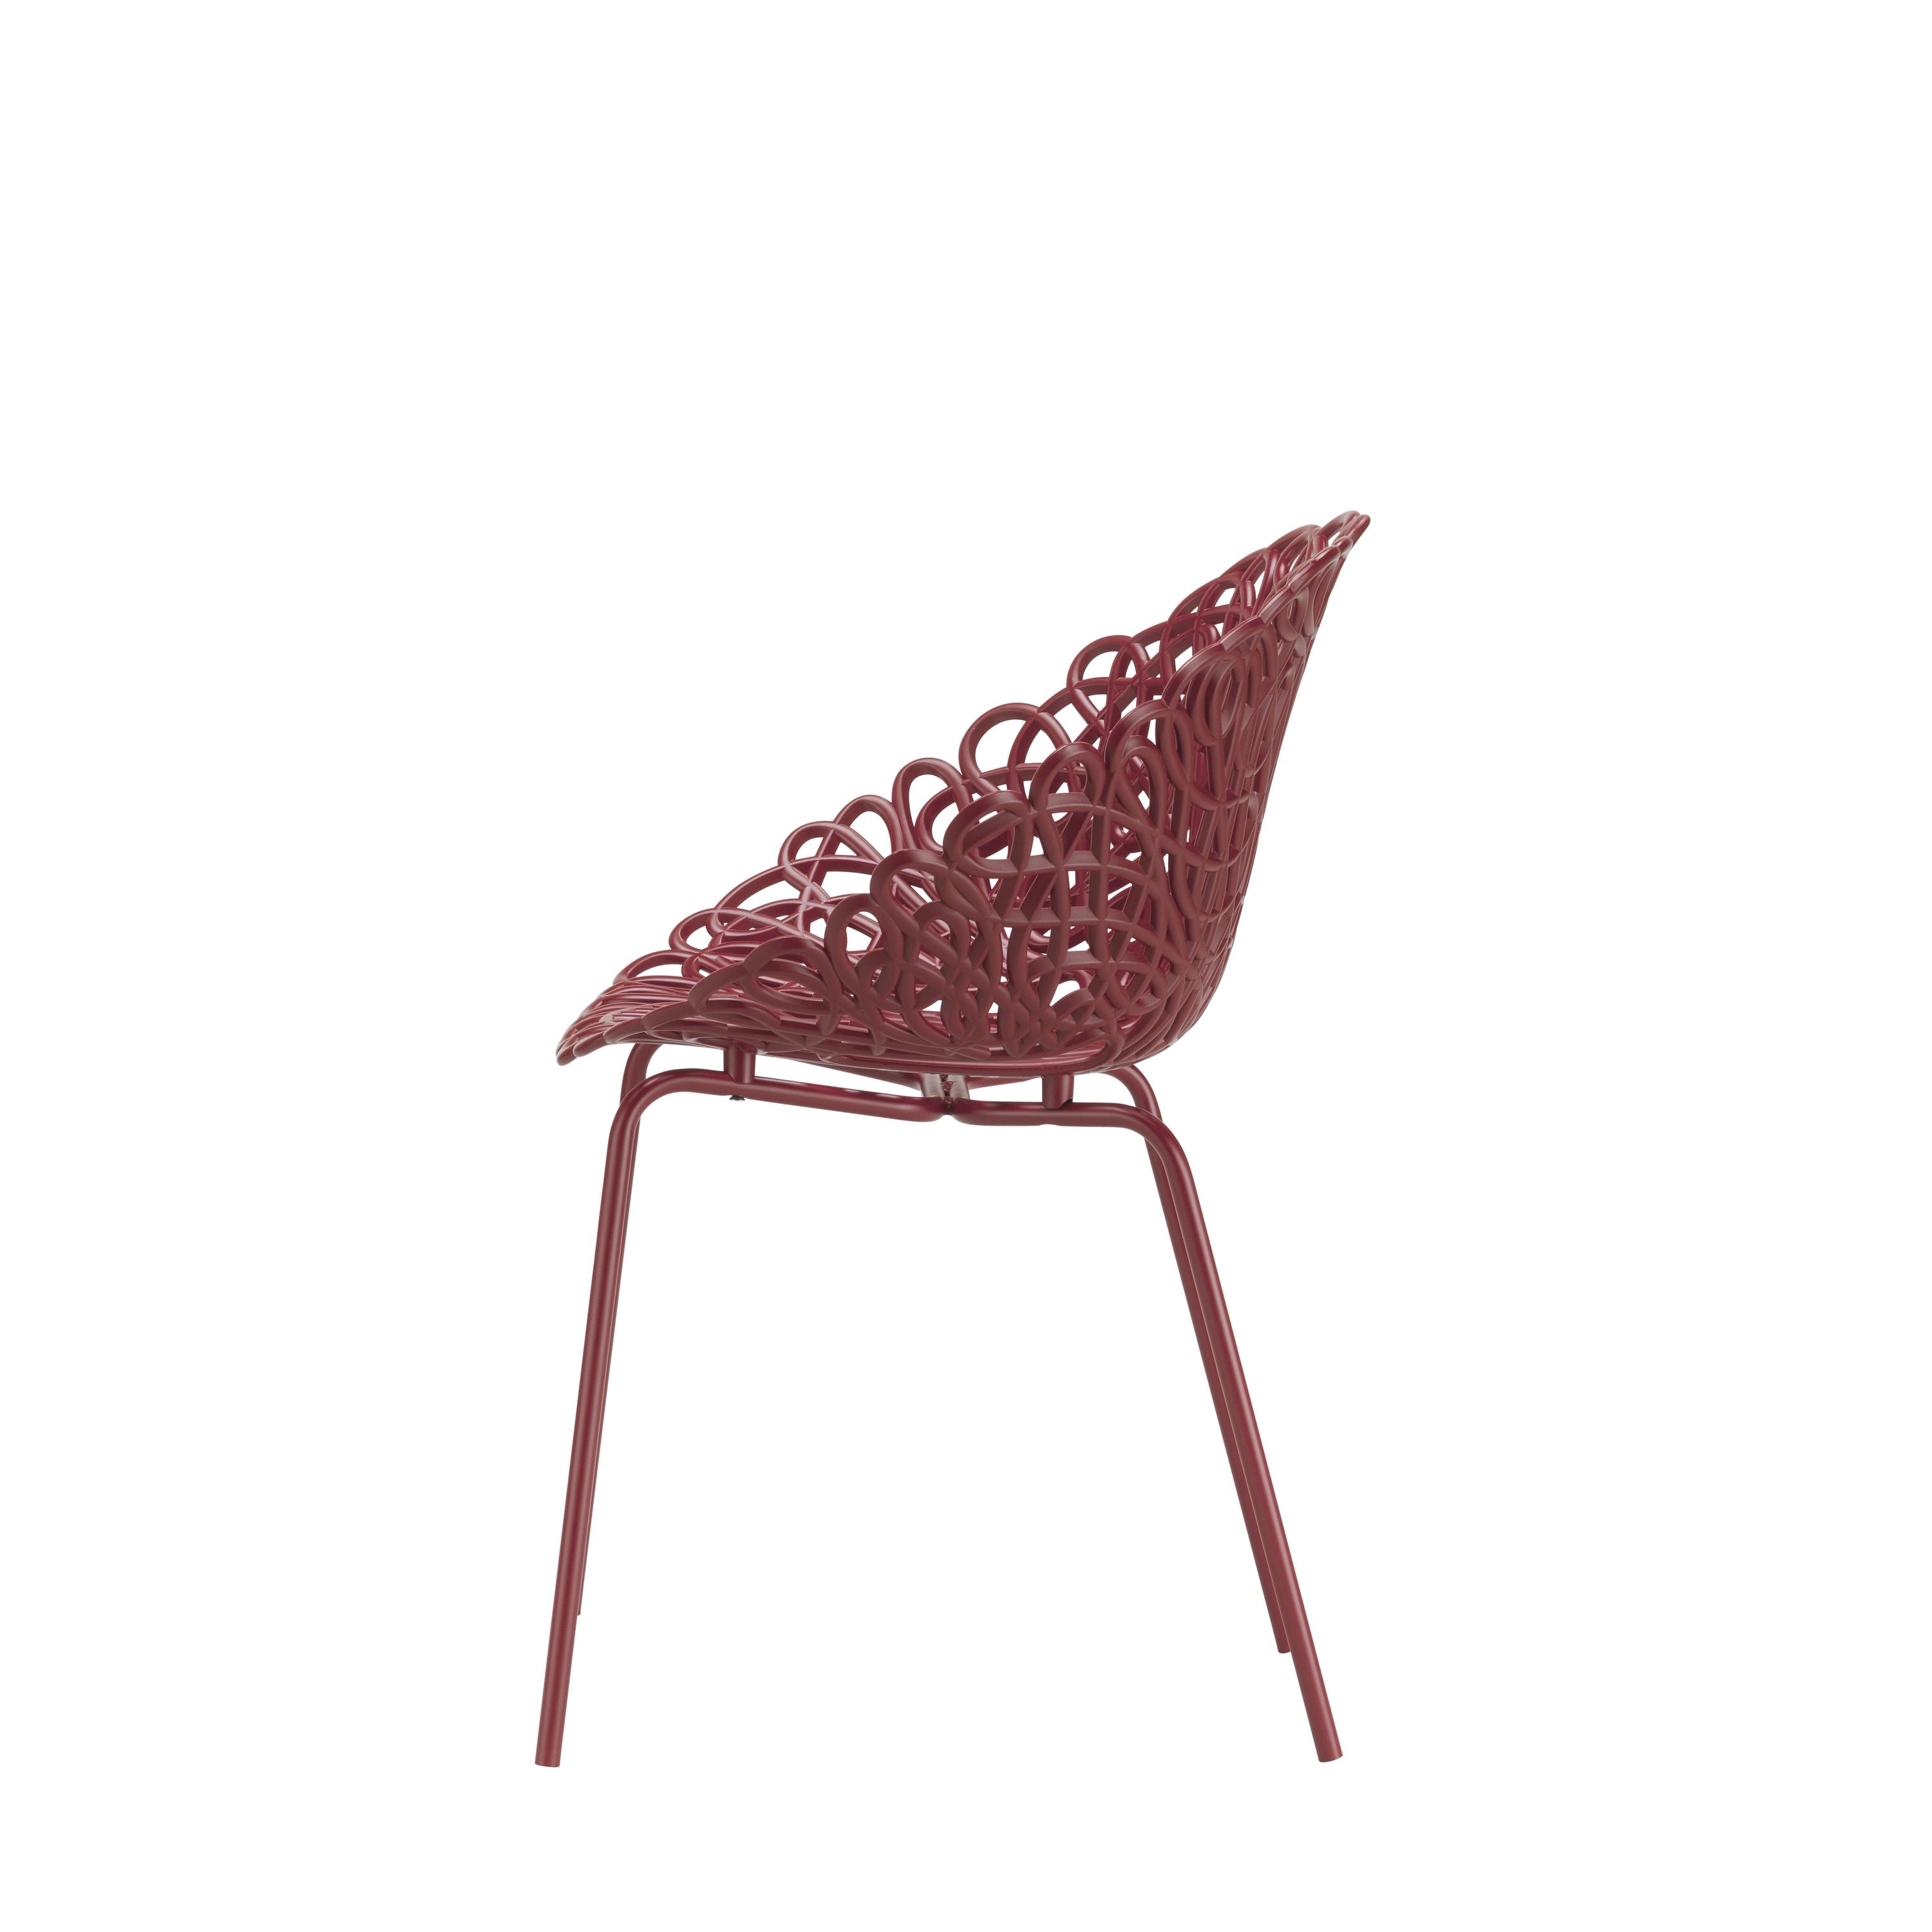 Qeeboo Bacana Chair Indoor Set Of 2 Pcs, Dark Red